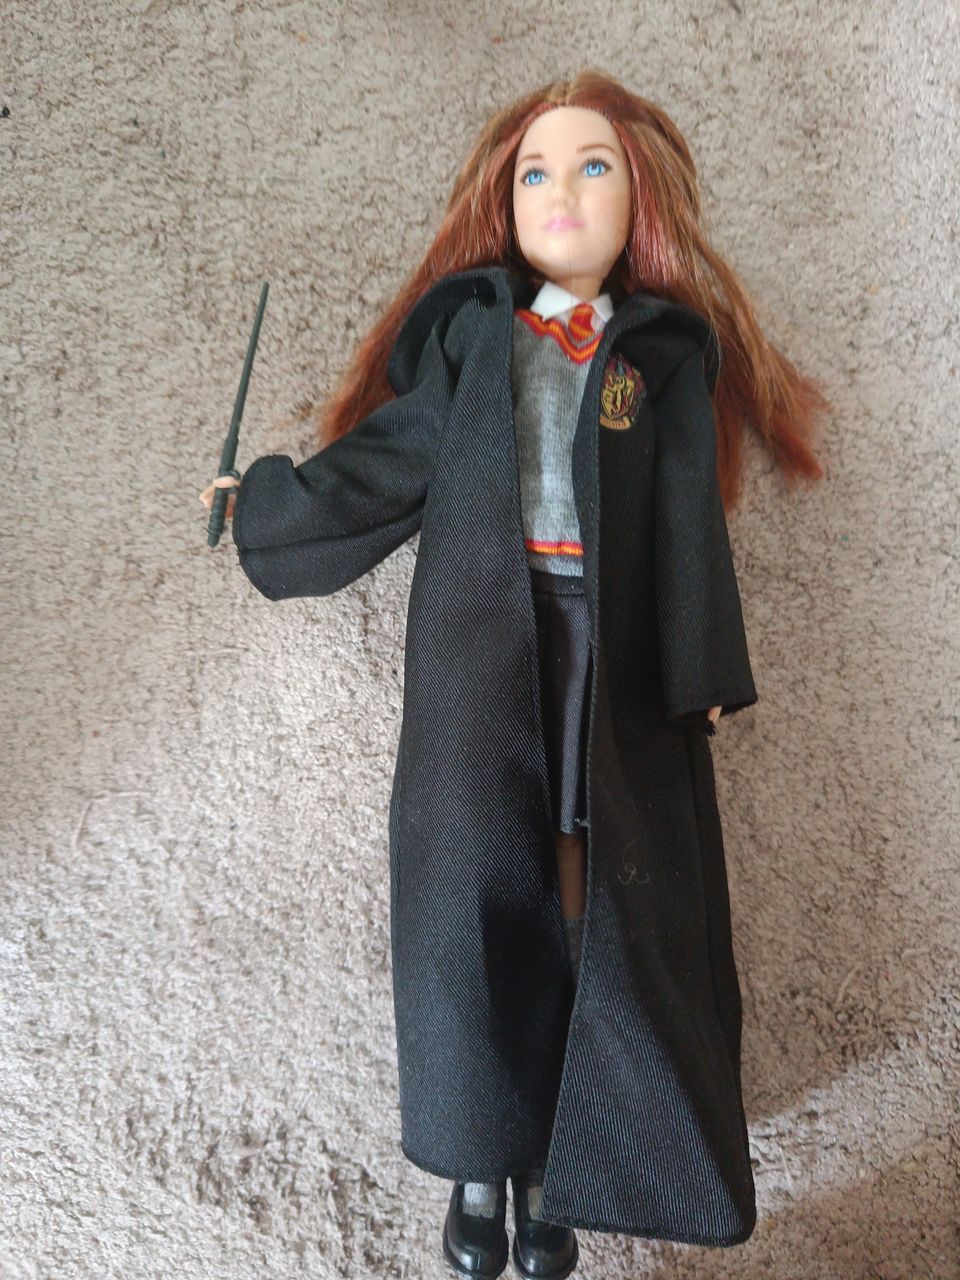 Ginny Weasley nukke